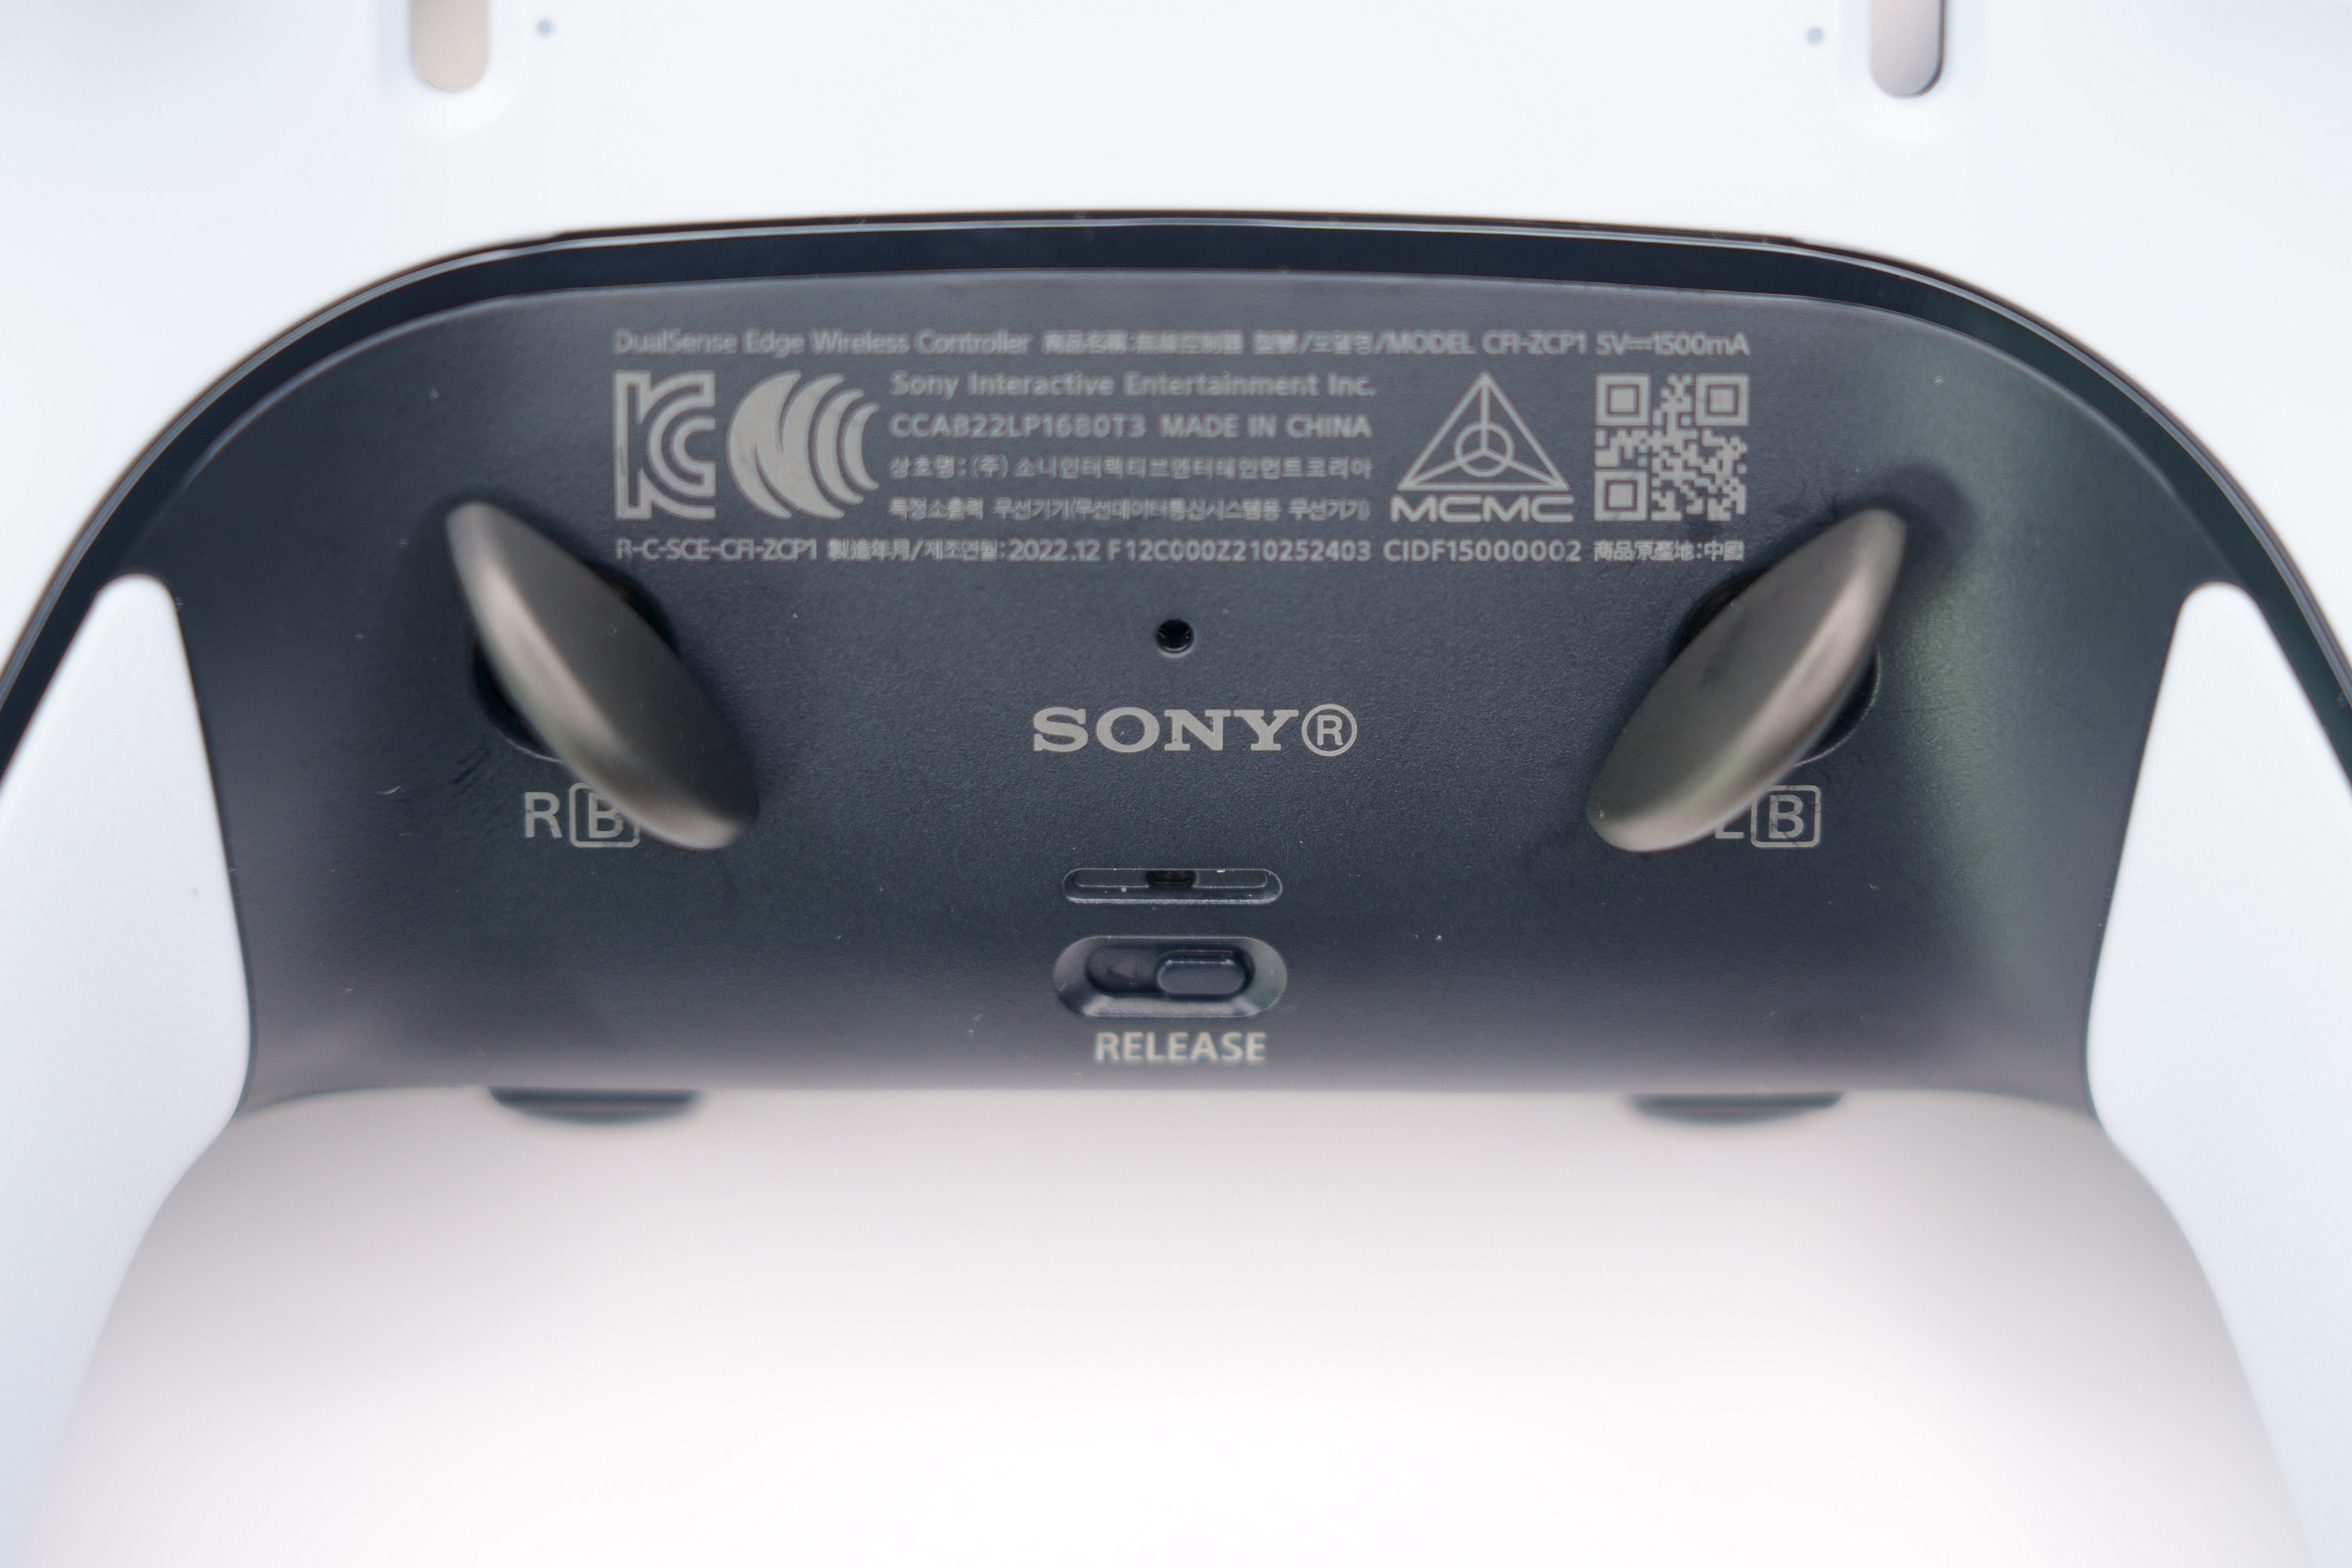 PS5 DualSense Edge 高效能控制器一手开箱 丰富自订功能满足各类型玩家需求插图22